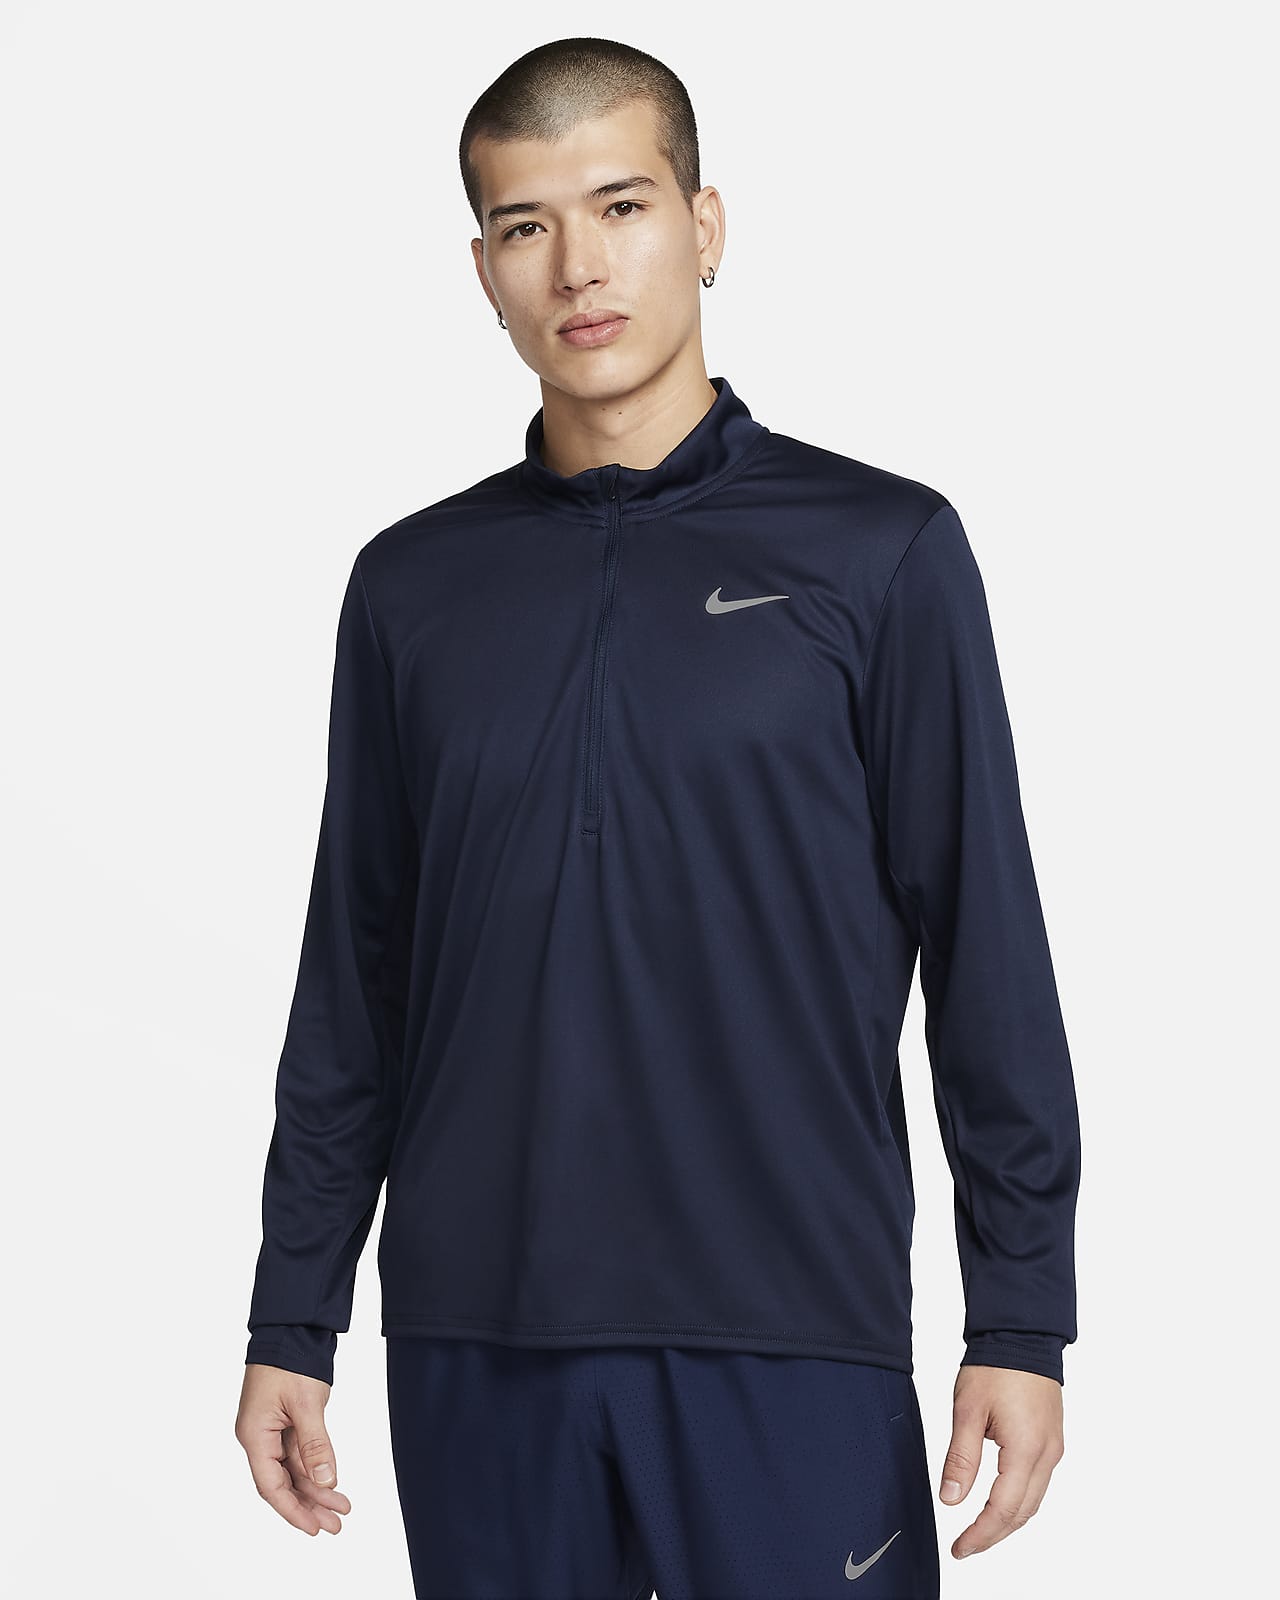 Ανδρική μπλούζα Dri-FIT για τρέξιμο με φερμουάρ στο 1/2 του μήκους Nike Pacer